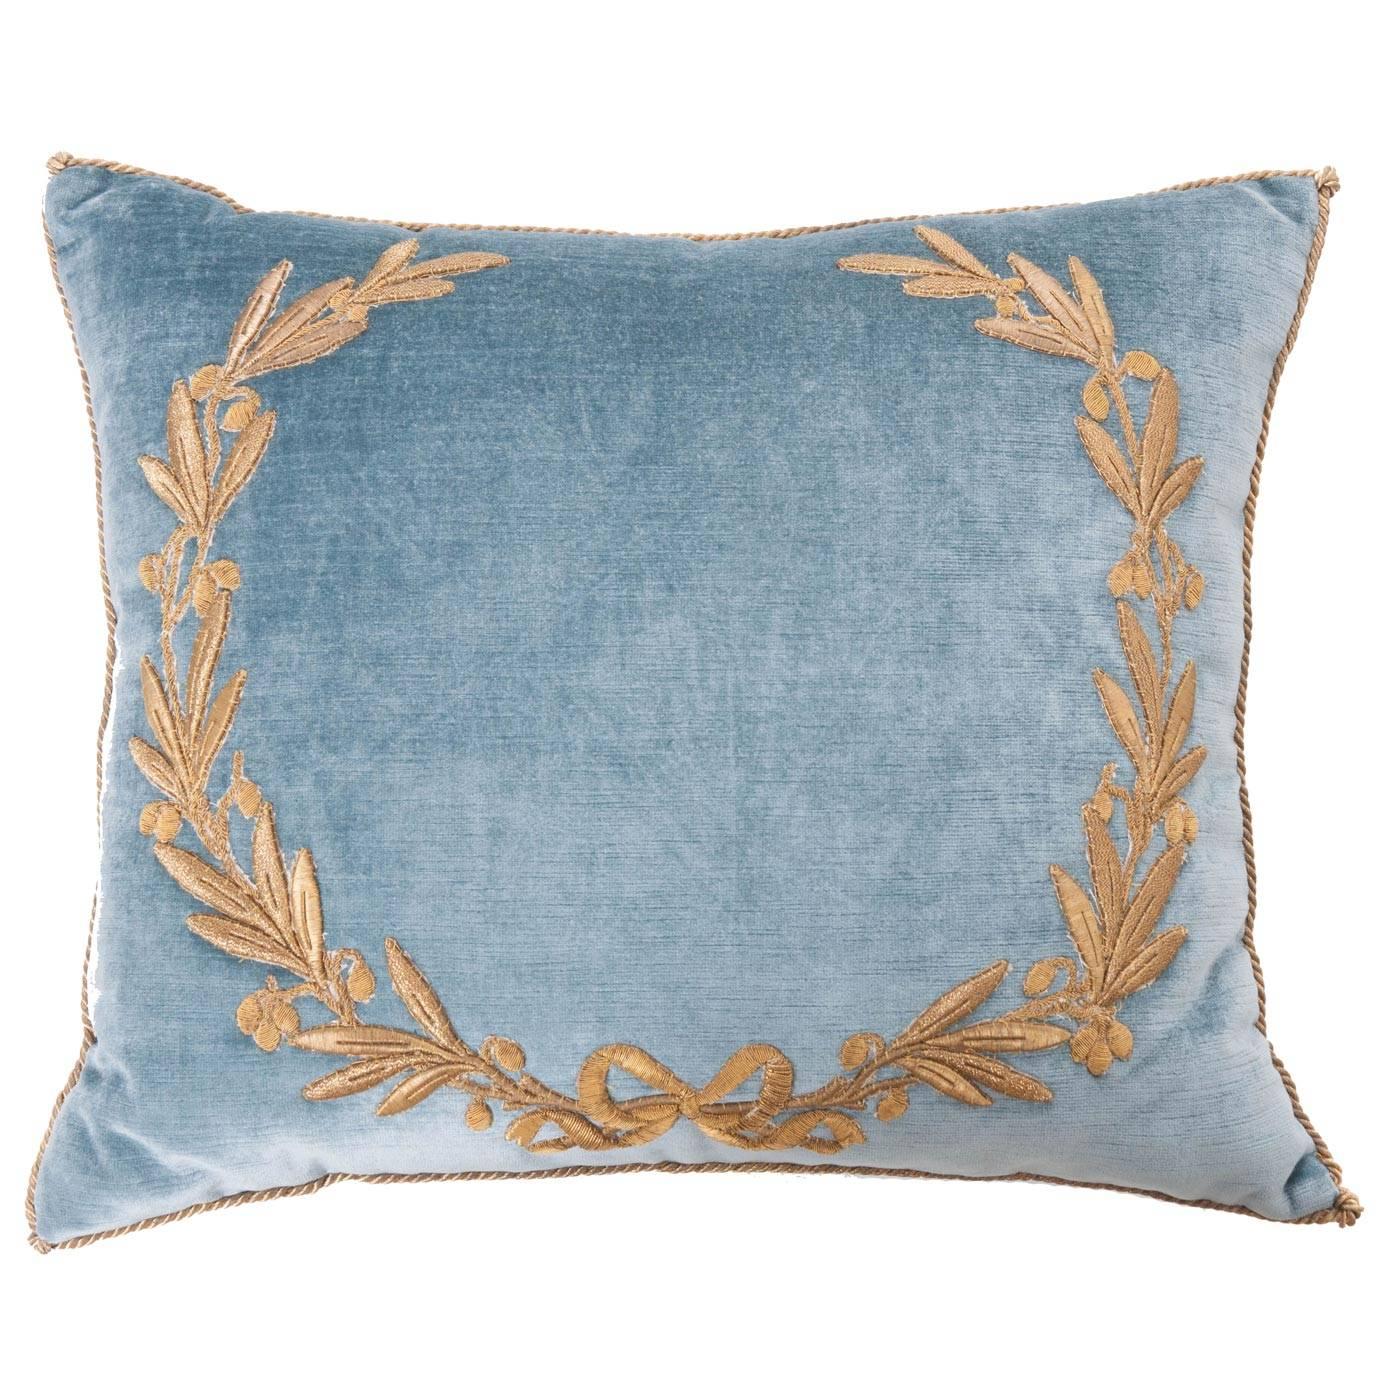 Antique Textile Pillow by B. Viz Designs